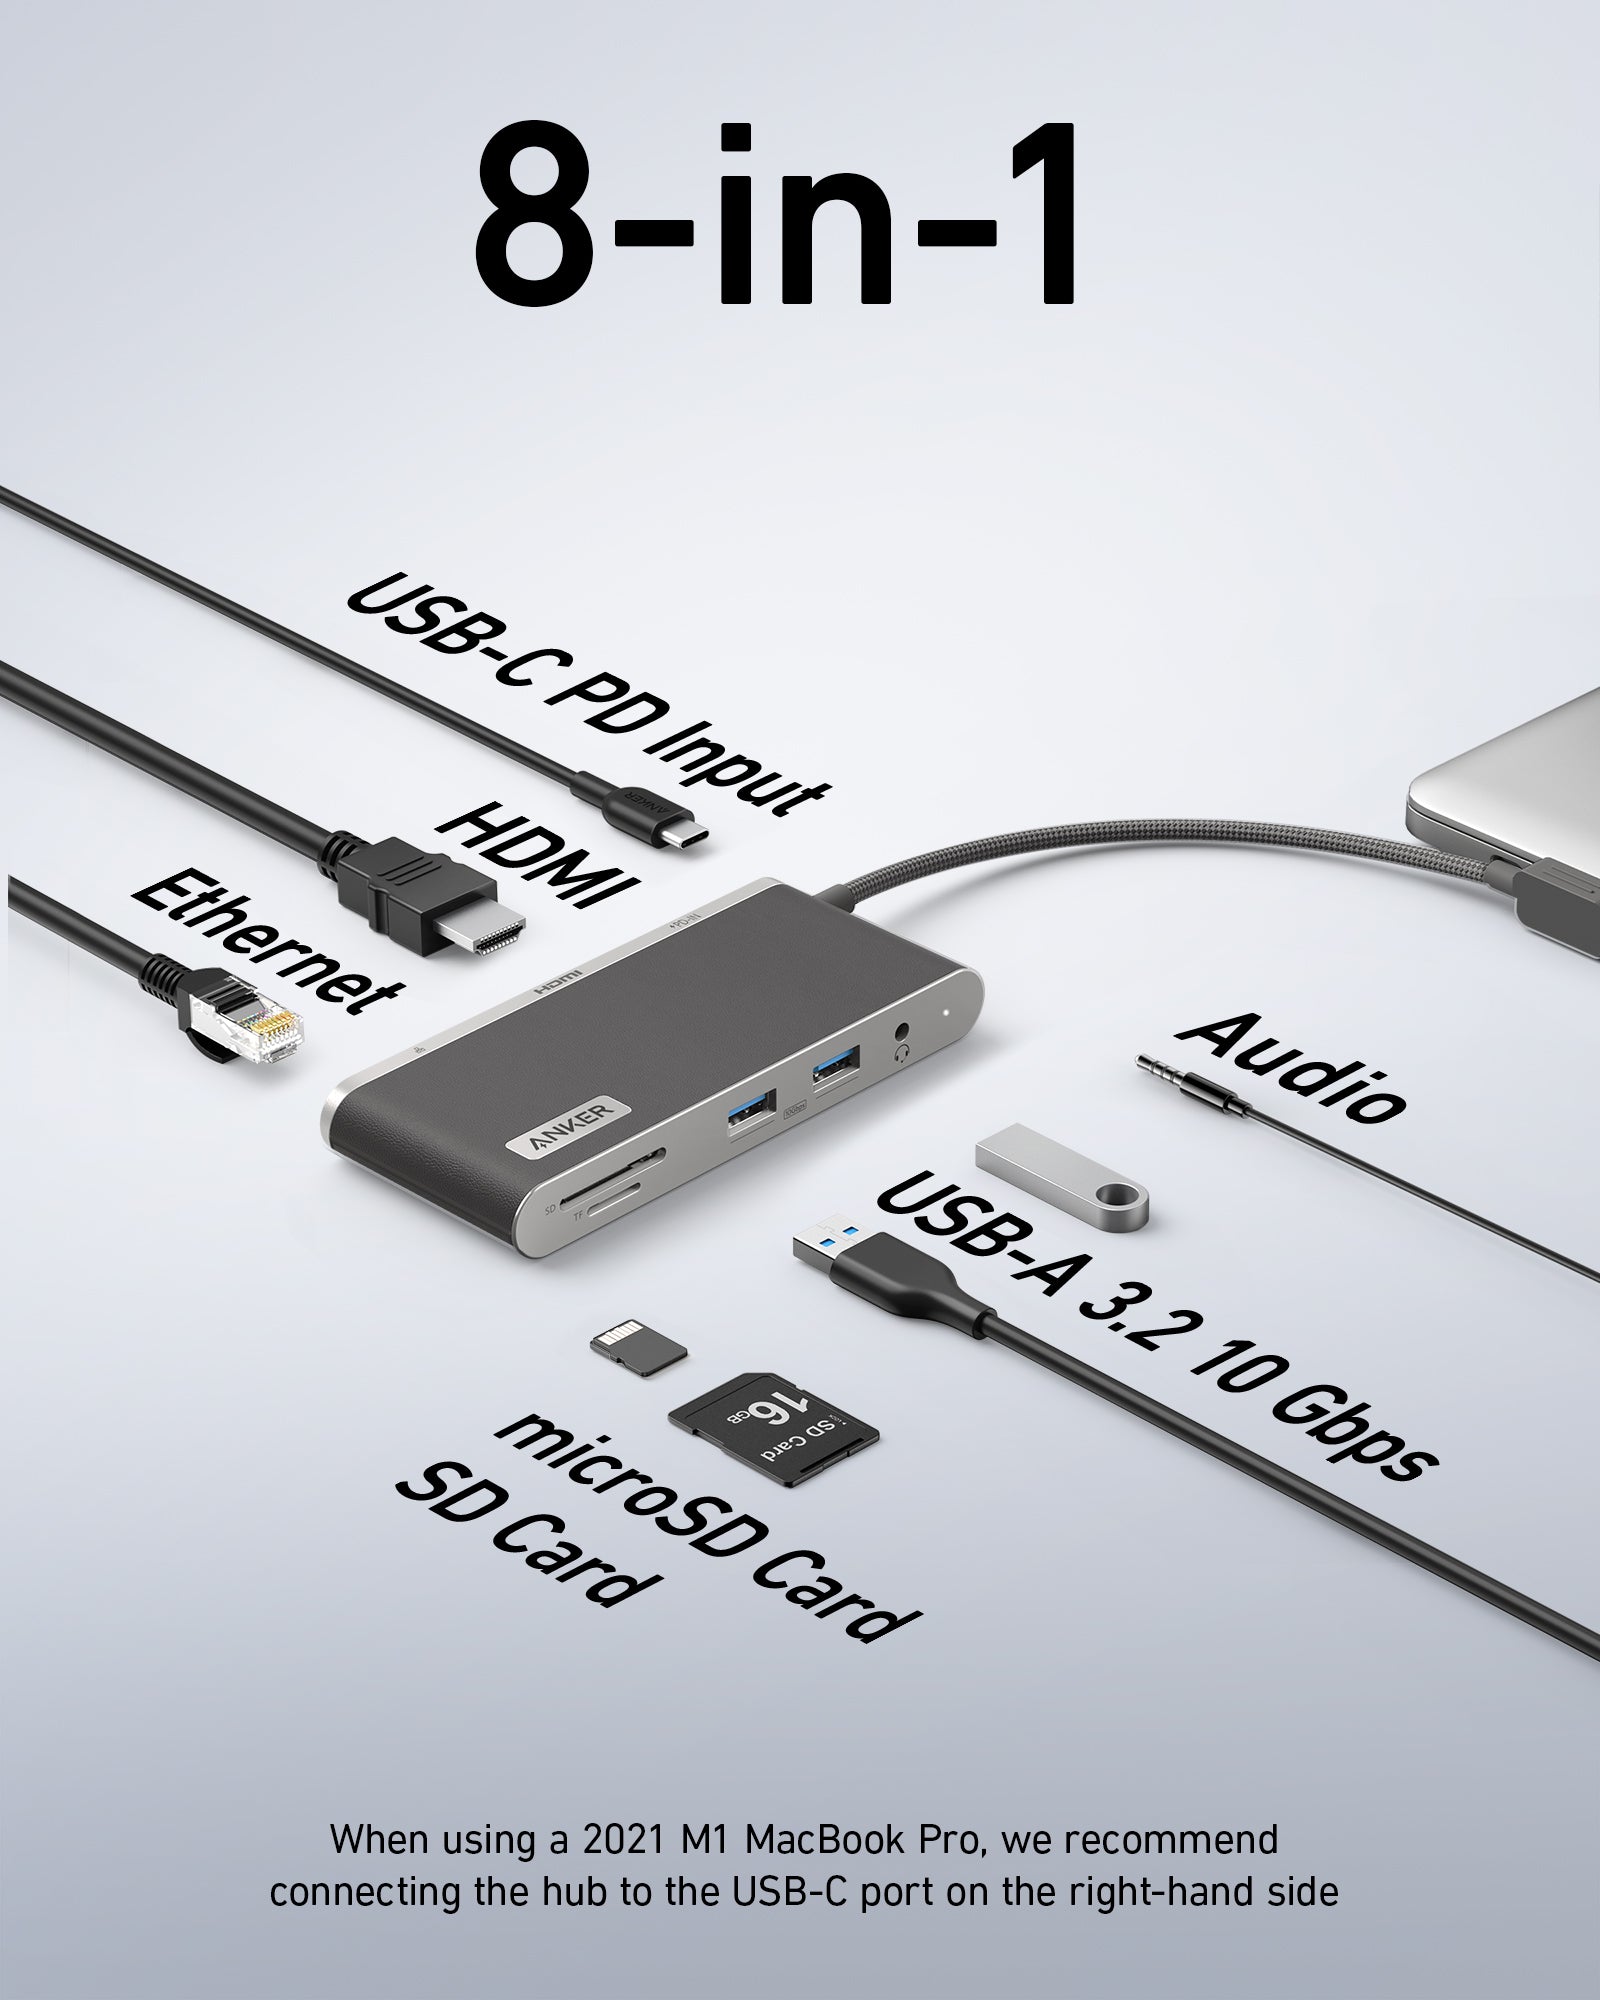 Anker 553 USB-C Hub (8-in-1) - Anker UK